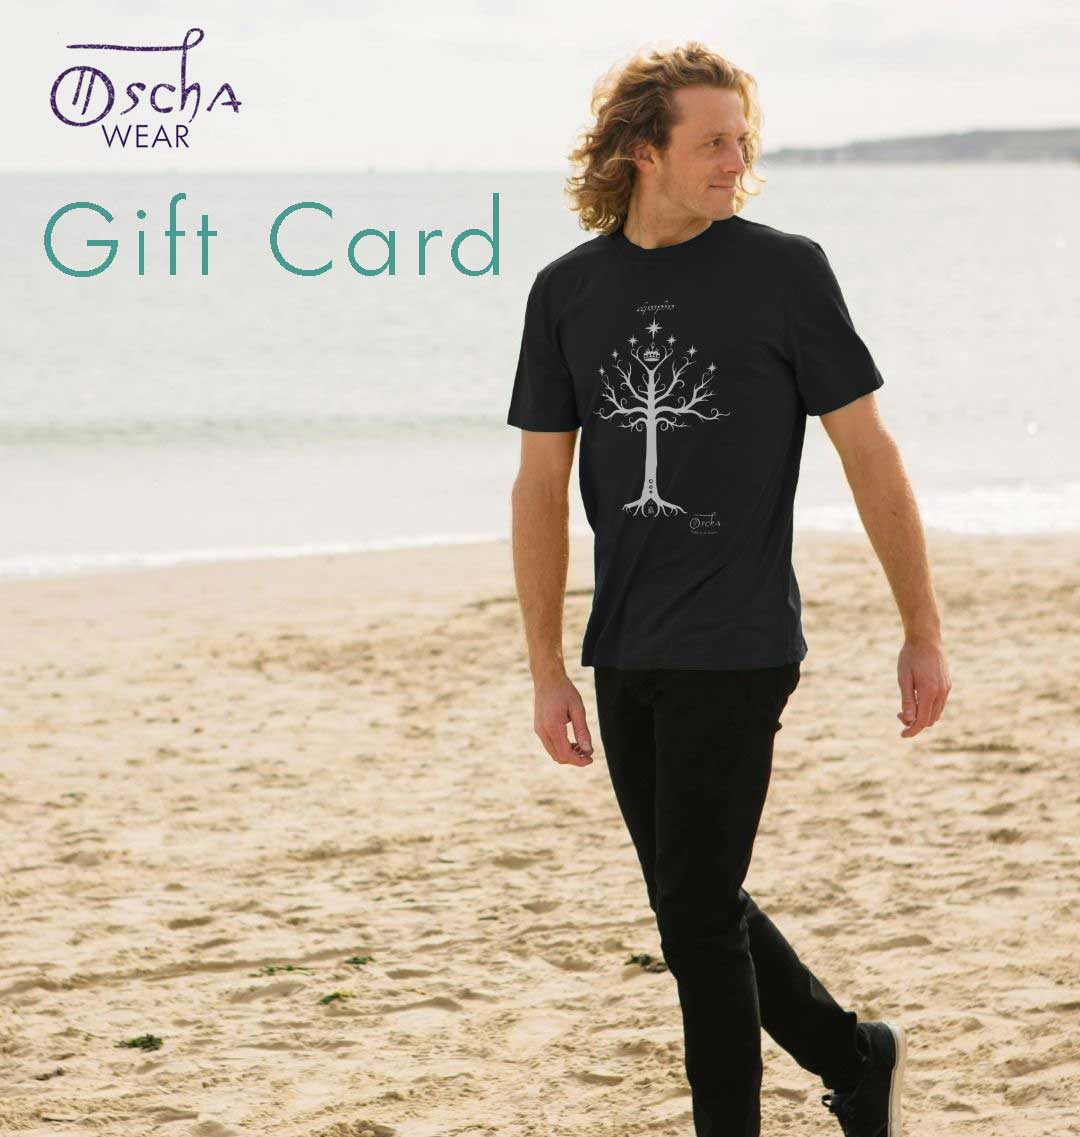 Oscha Wear Gift Card